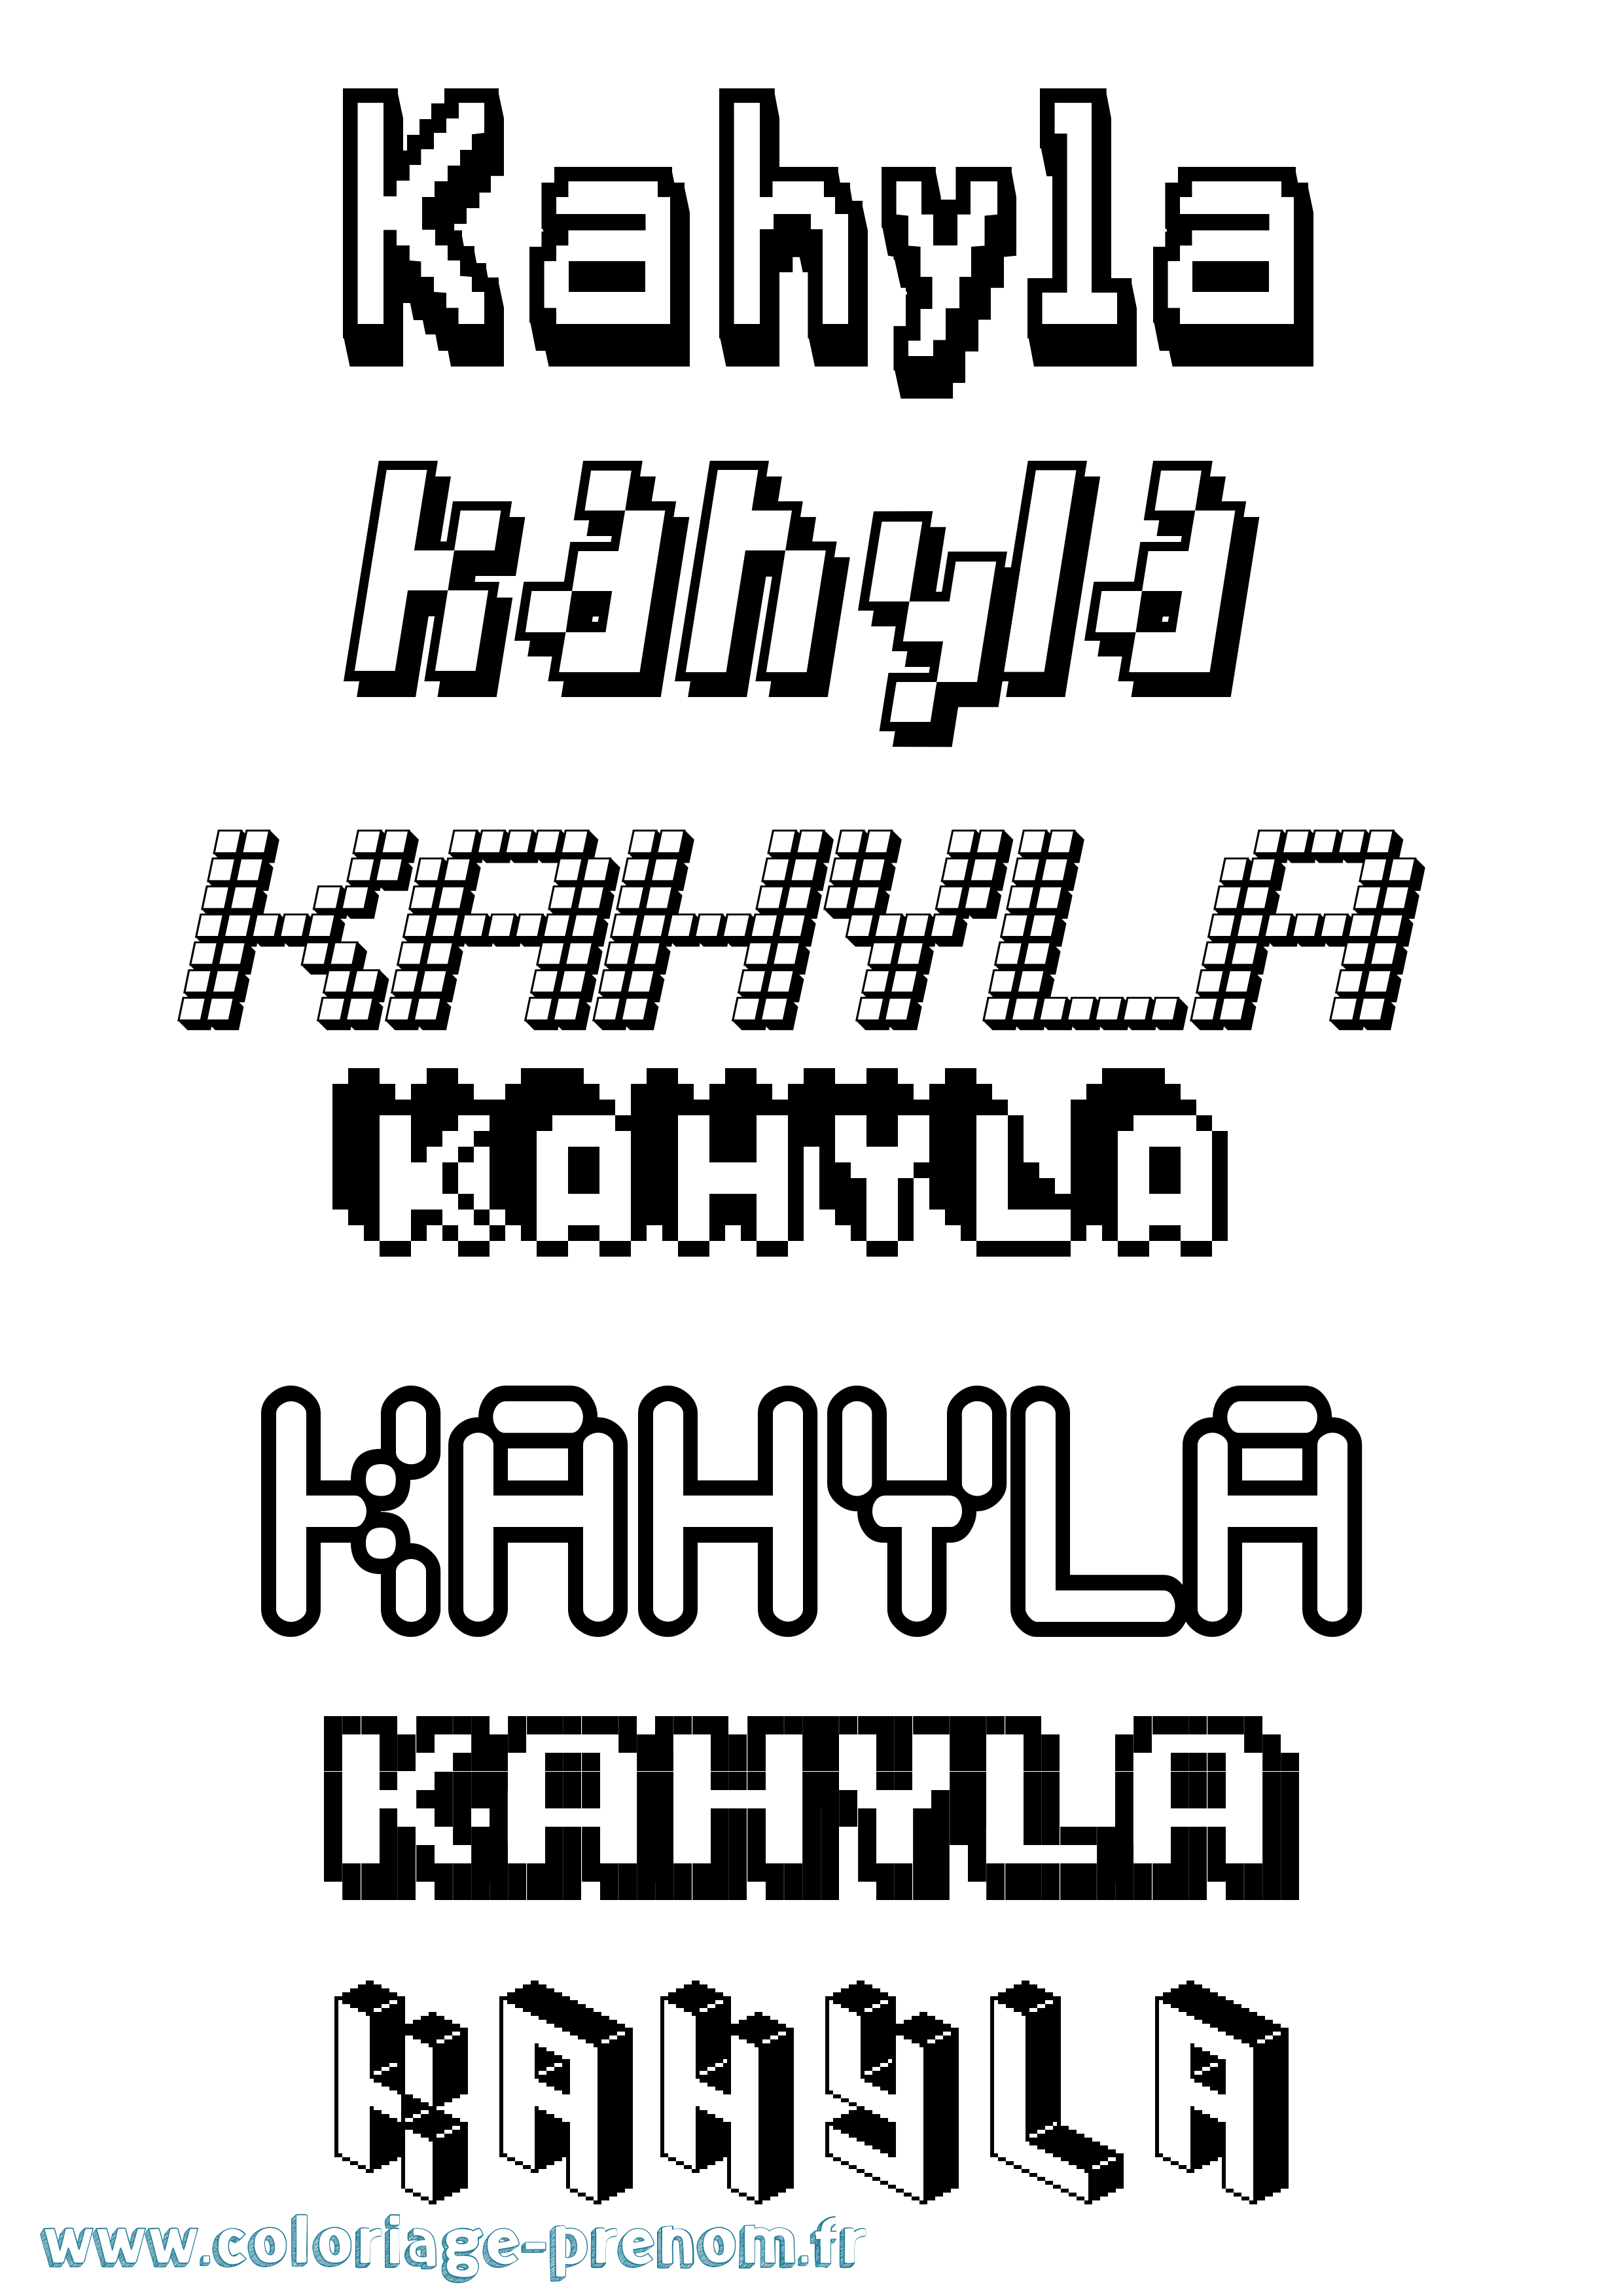 Coloriage prénom Kahyla Pixel